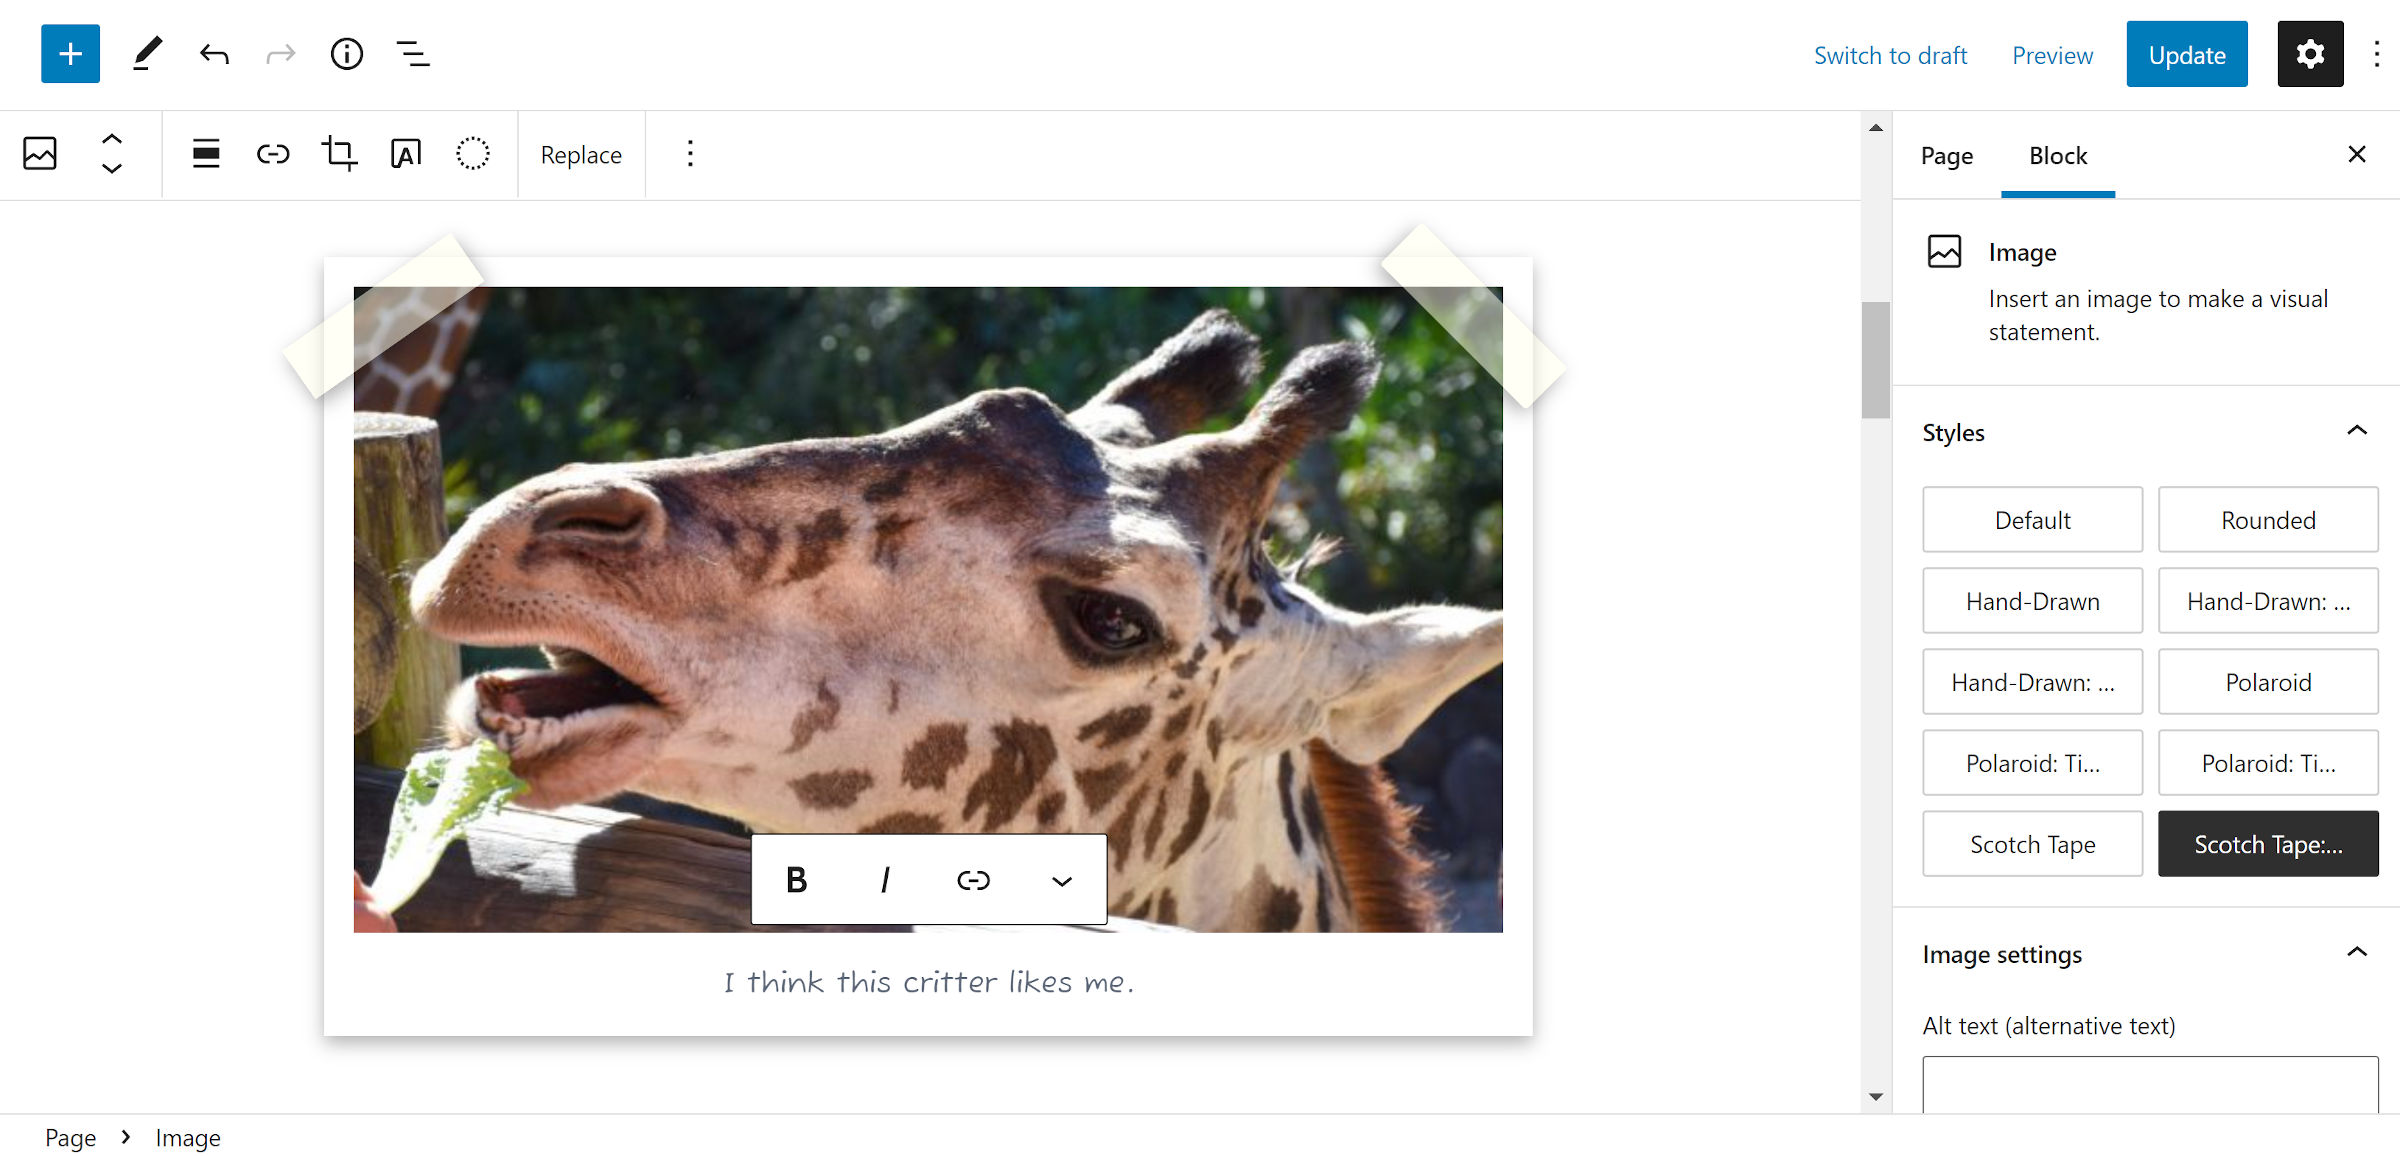 Photo d'une girafe dans un cadre de style Polaroid avec du scotch qui la maintient dans les coins supérieurs.  Ceci est présenté dans l'éditeur de blocs WordPress.